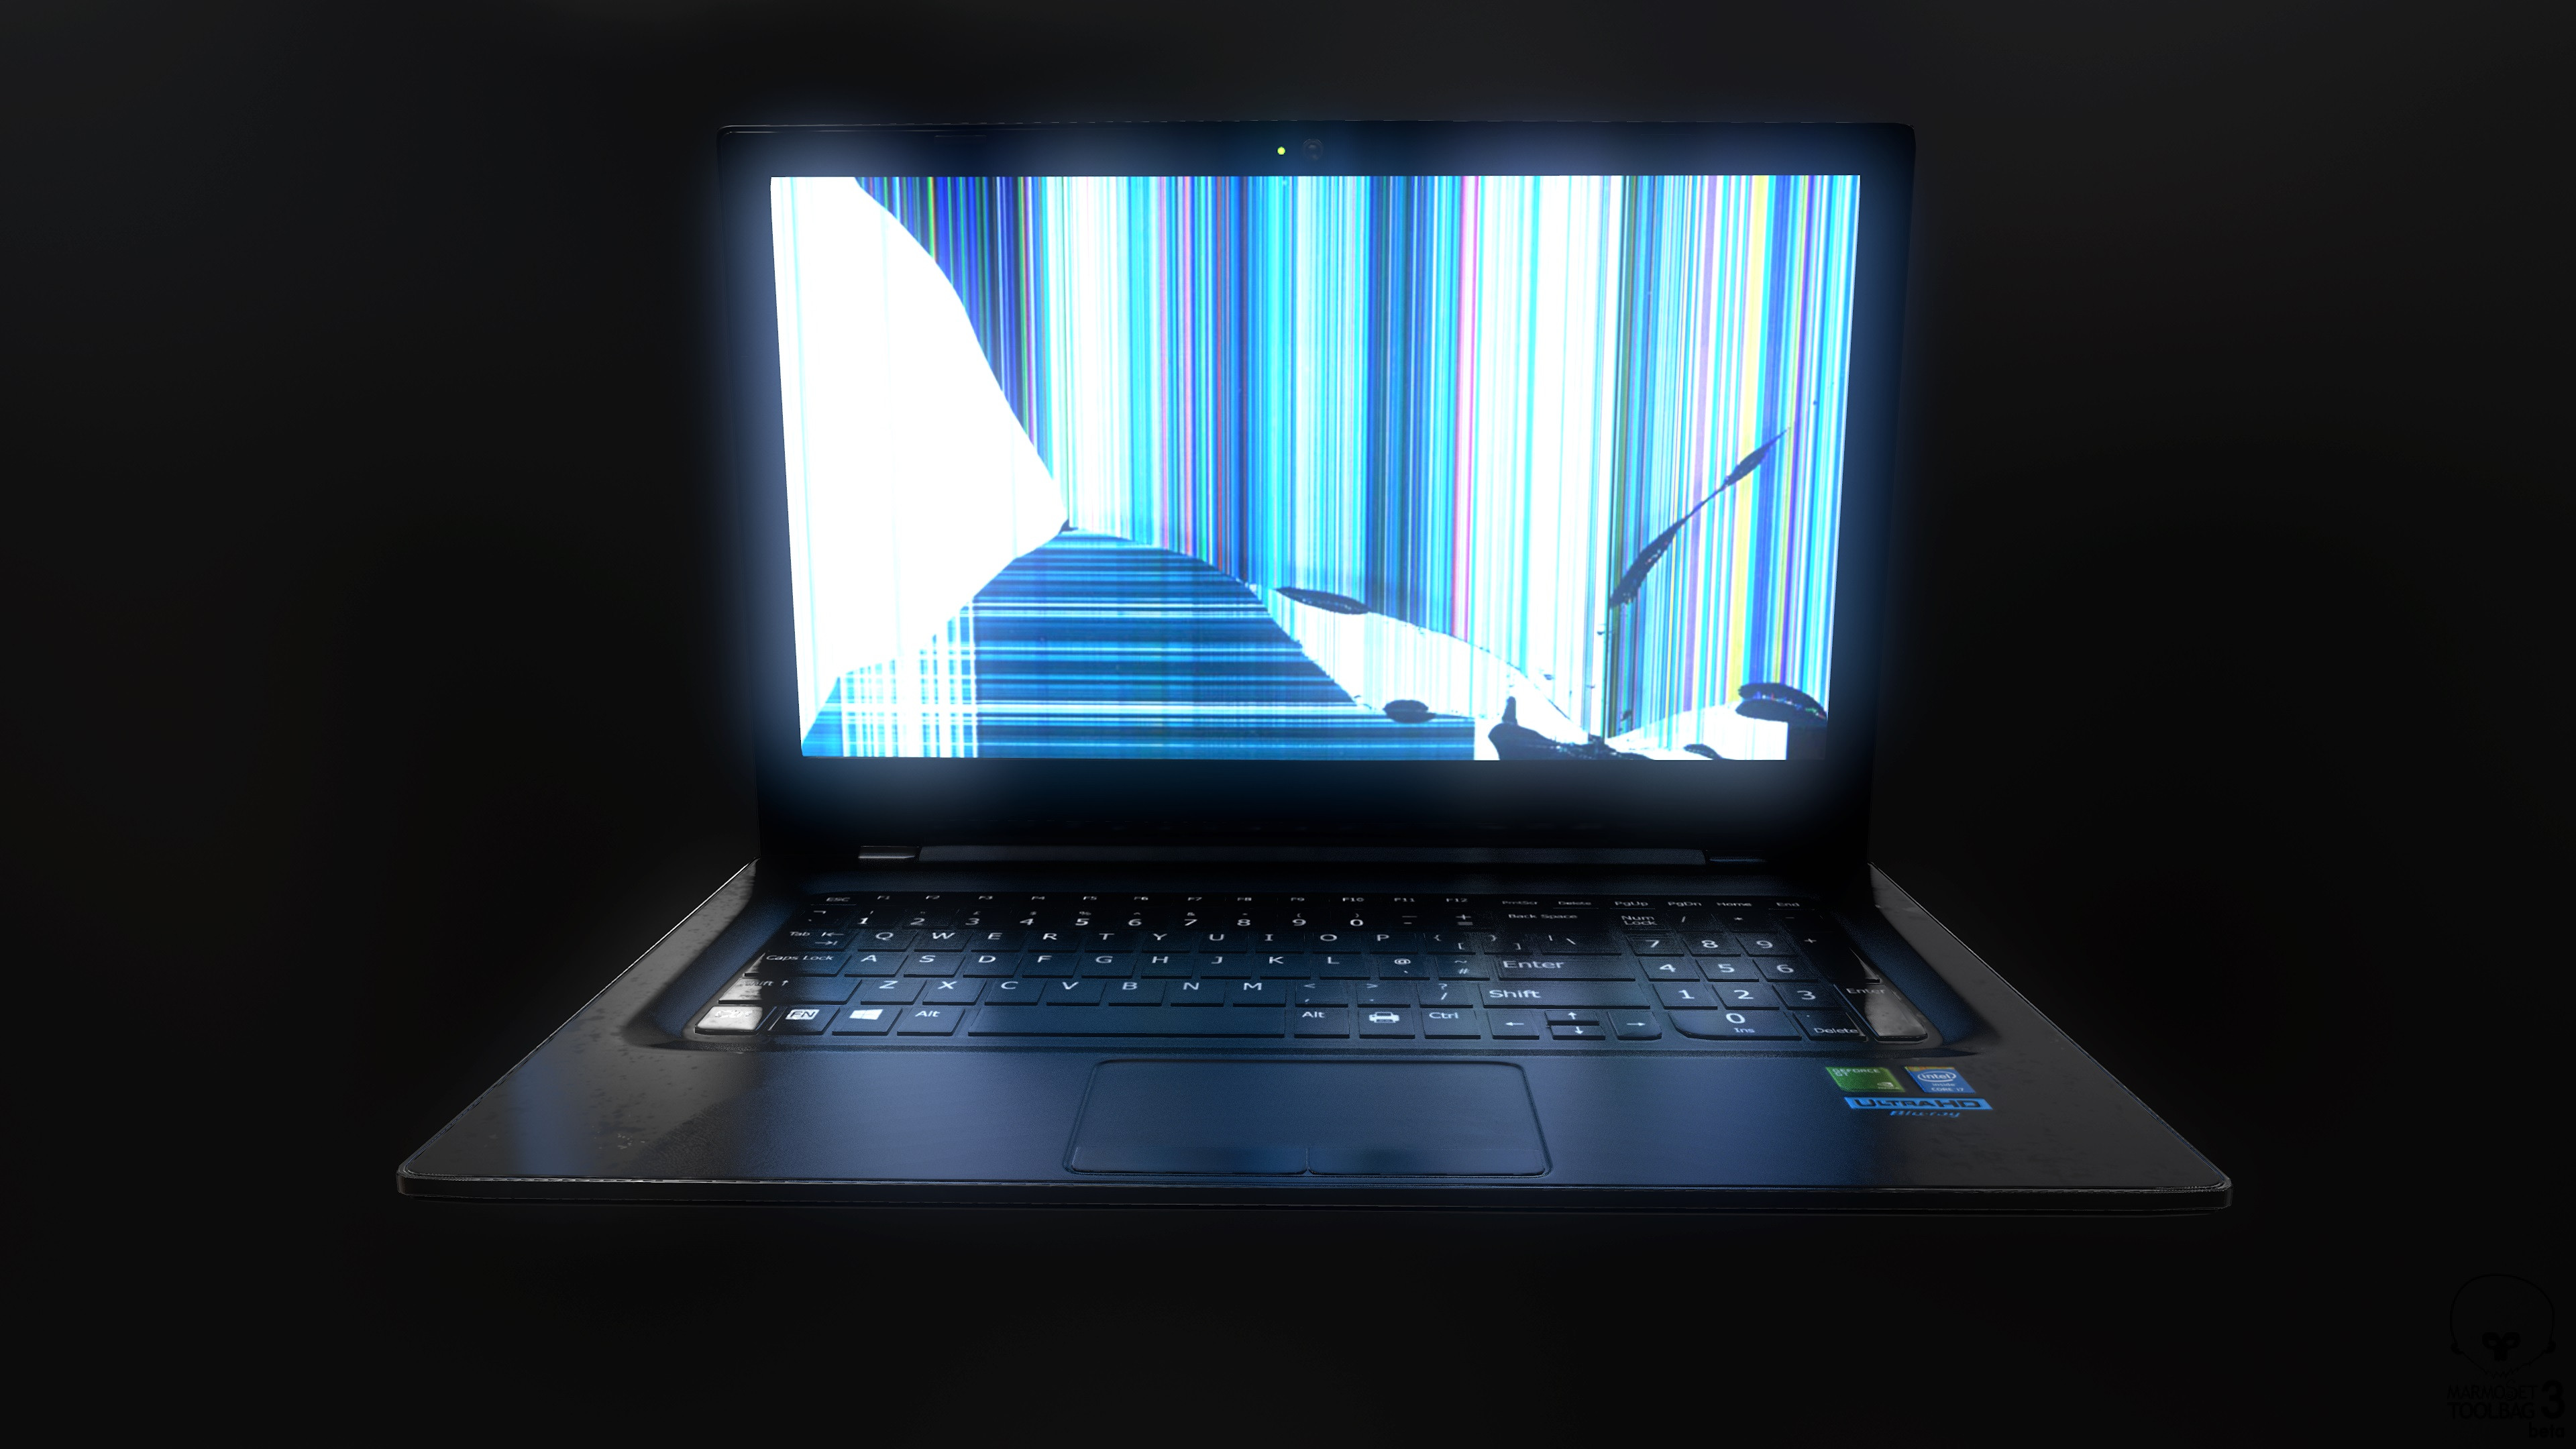 Картинка на монитор ноутбука. Разбитый ноутбук. Сломанный ноутбук. Сломанный дисплей ноутбука. Разбитый экран ноутбука.